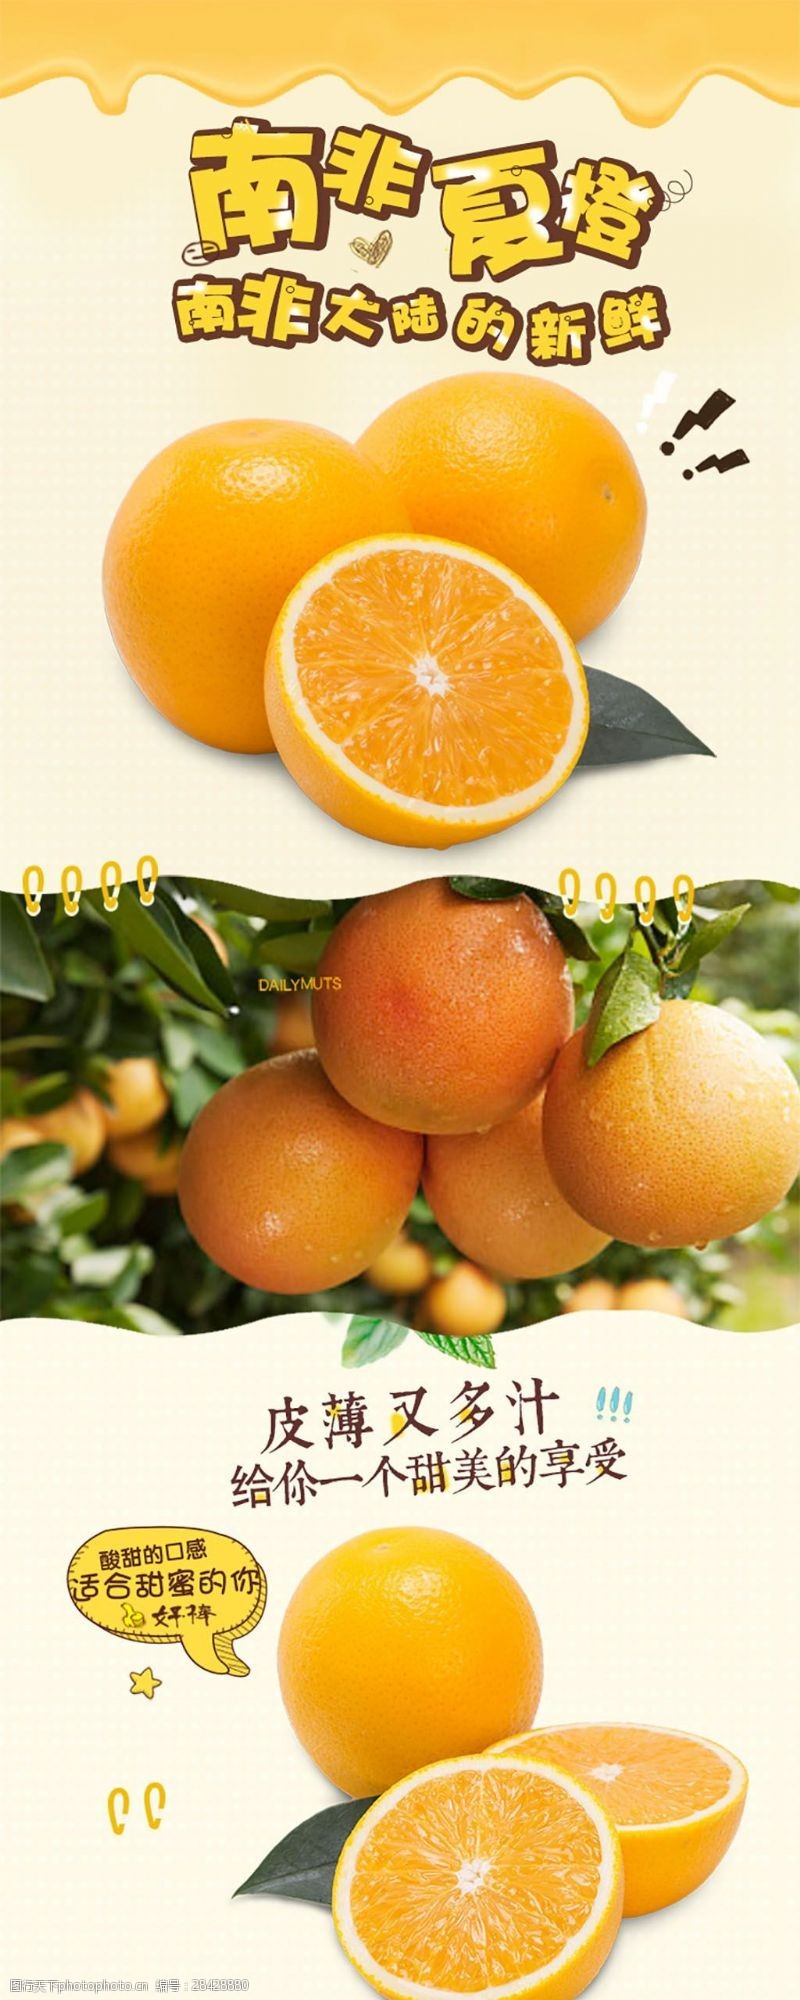 营养健康淘宝橙子详情页psd素材电商淘宝详情页模板食物鲜果水果